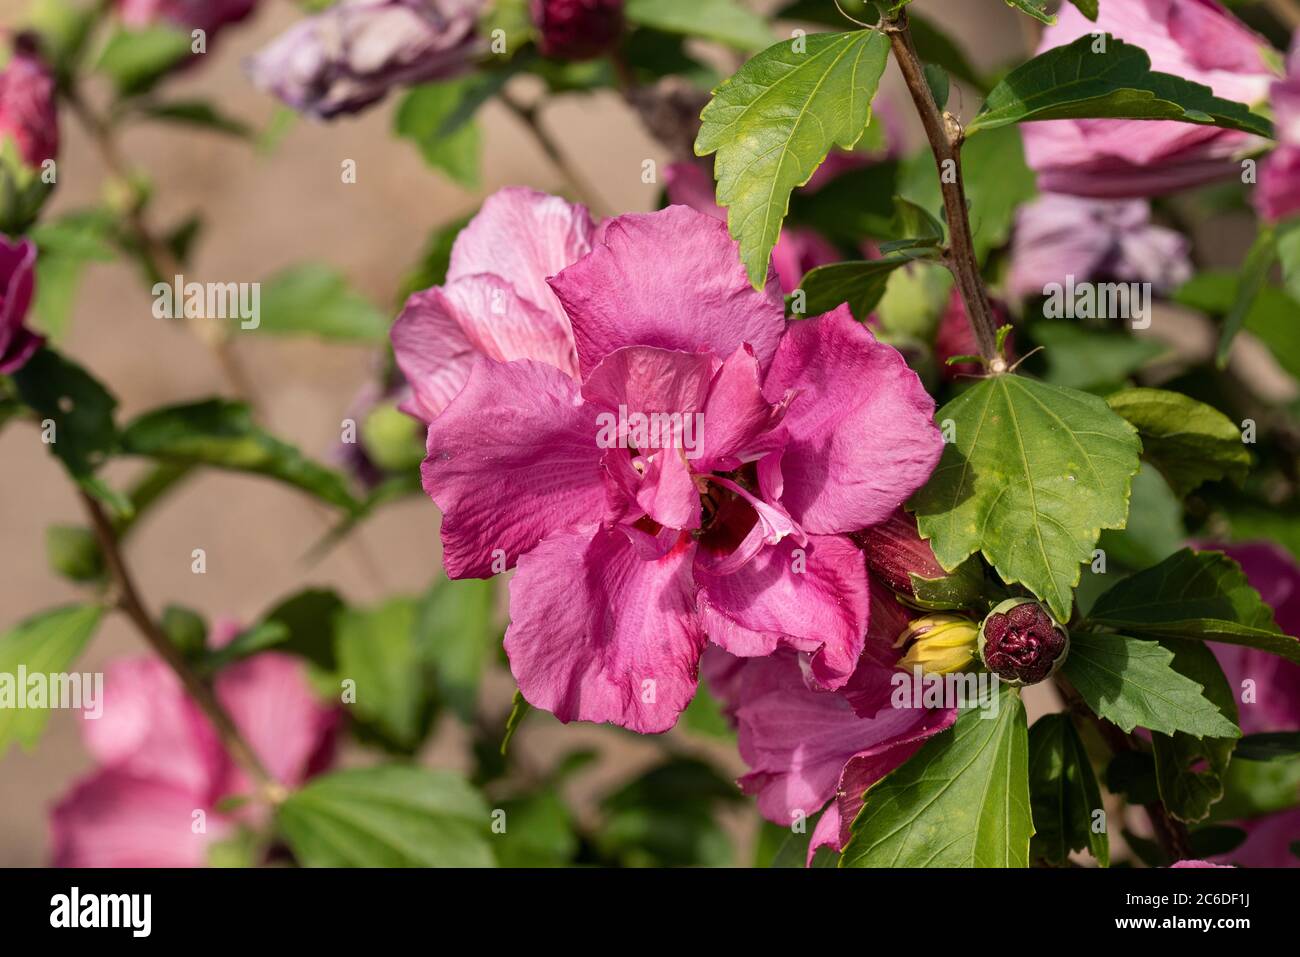 Garten-Eibisch, Hibiscus syriacus Puniceus Plenus, Garden Hibiscus, Hibiscus syriacus puniceus Plenus Stock Photo